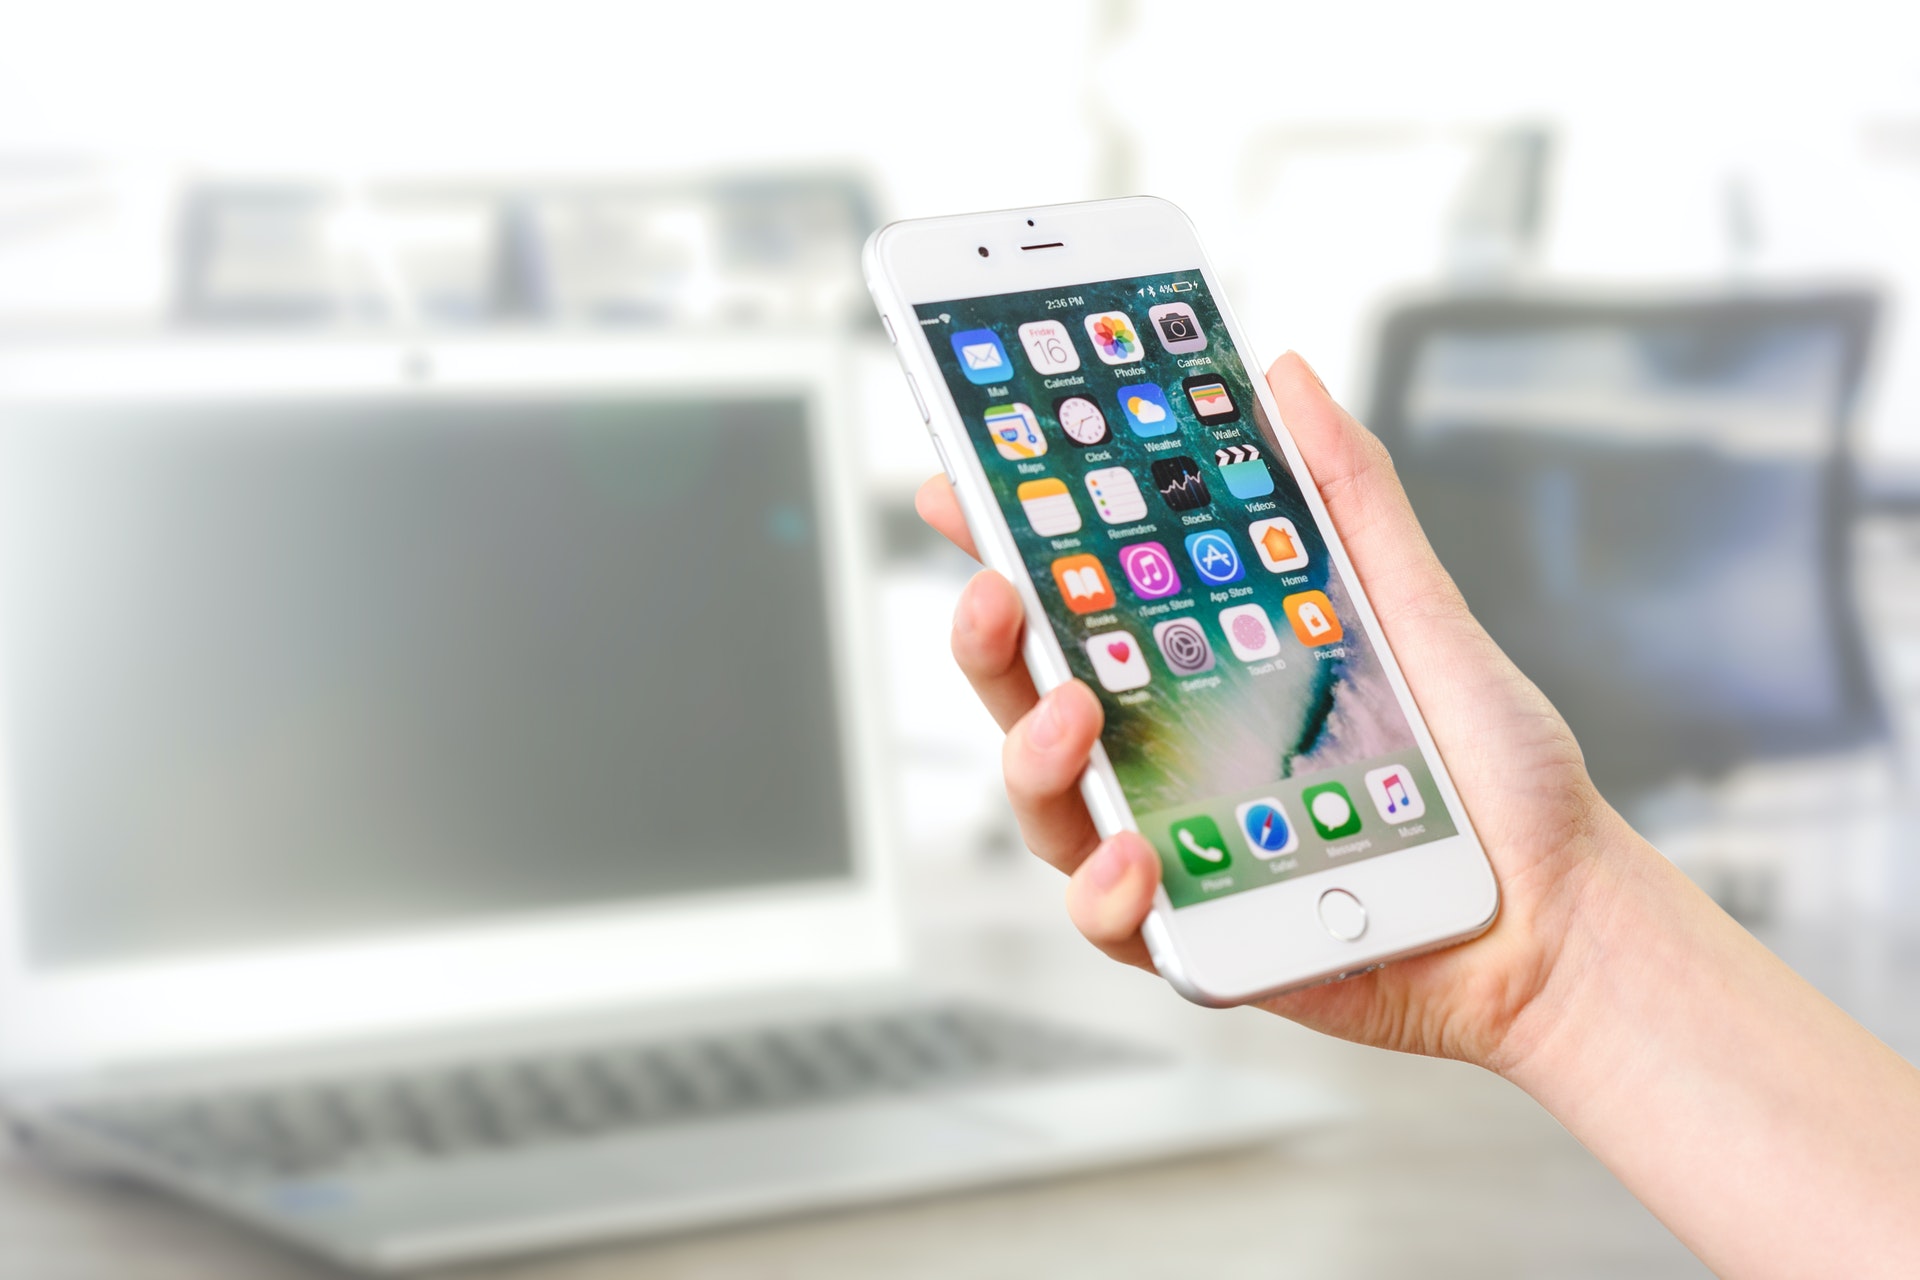 Mão segurando um celular com vários aplicativos na tela. Imagem ilustrativa do texto sobre franquias mais baratas do mercado.